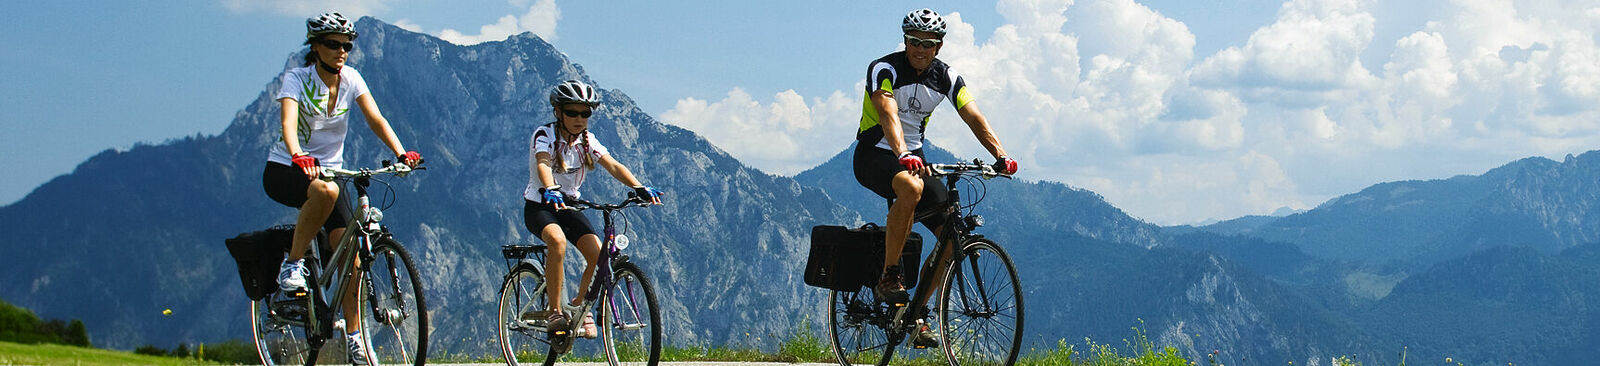 Zum Glück radeln: Unterwegs mit dem Fahrrad in Österreich